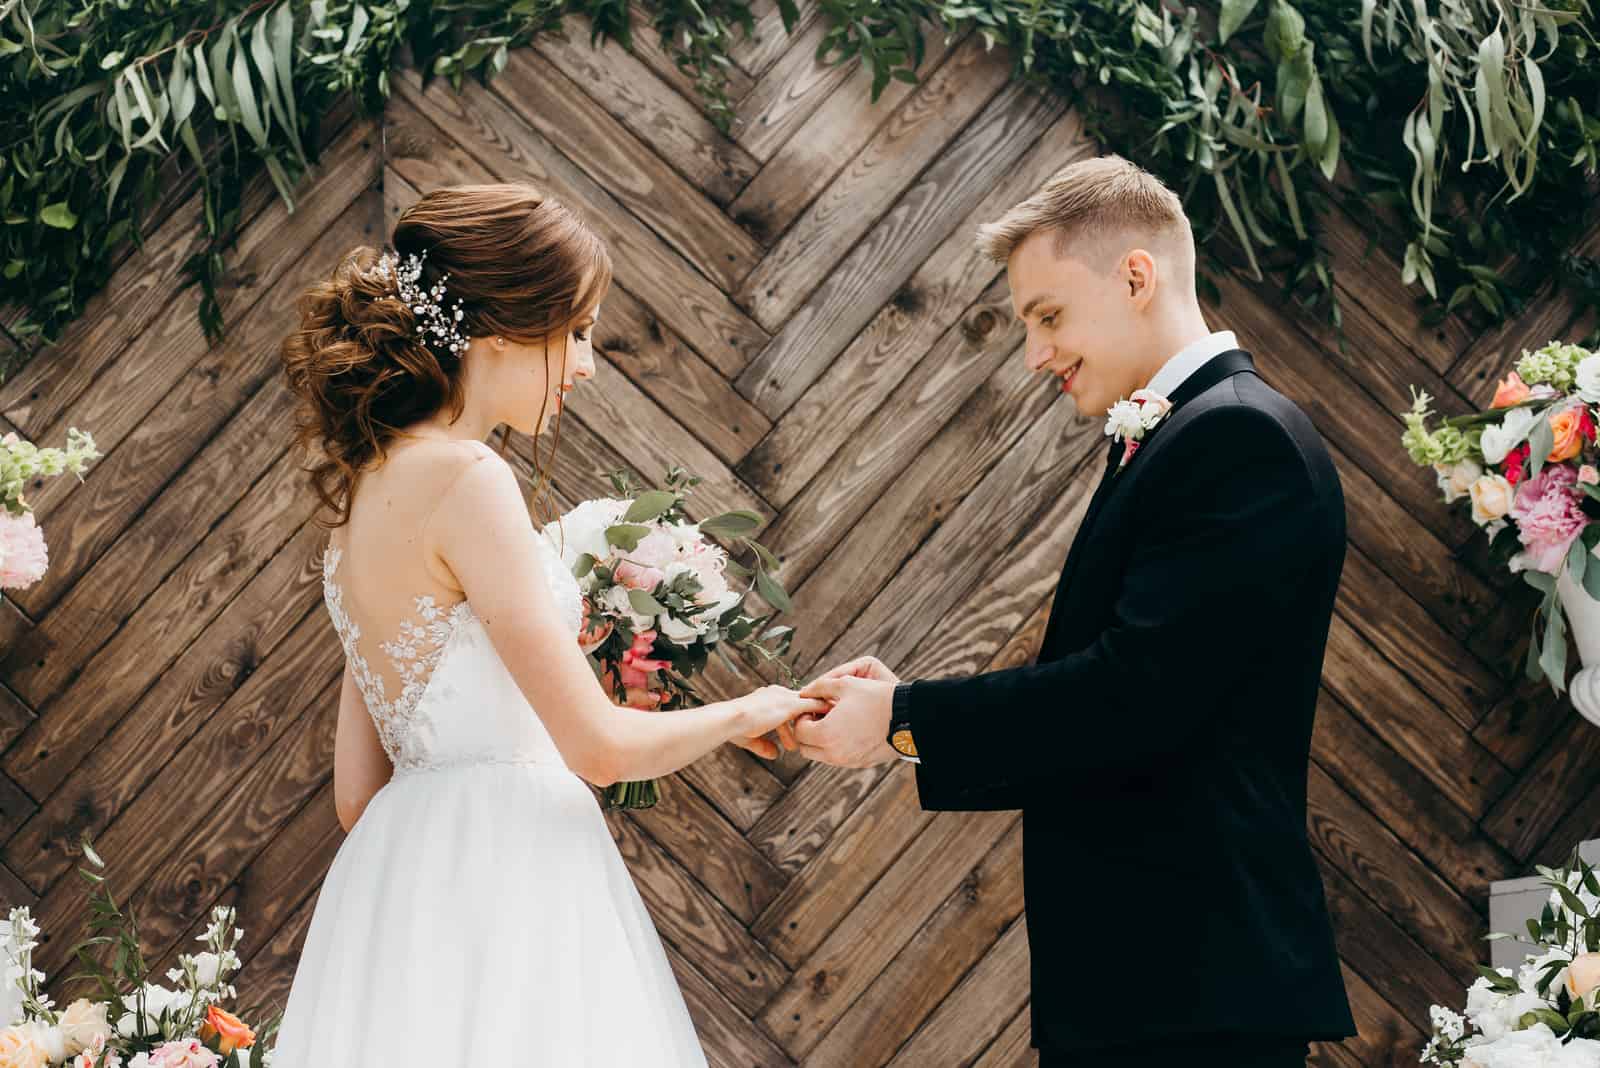 Der Bräutigam legt den Ring auf die Braut